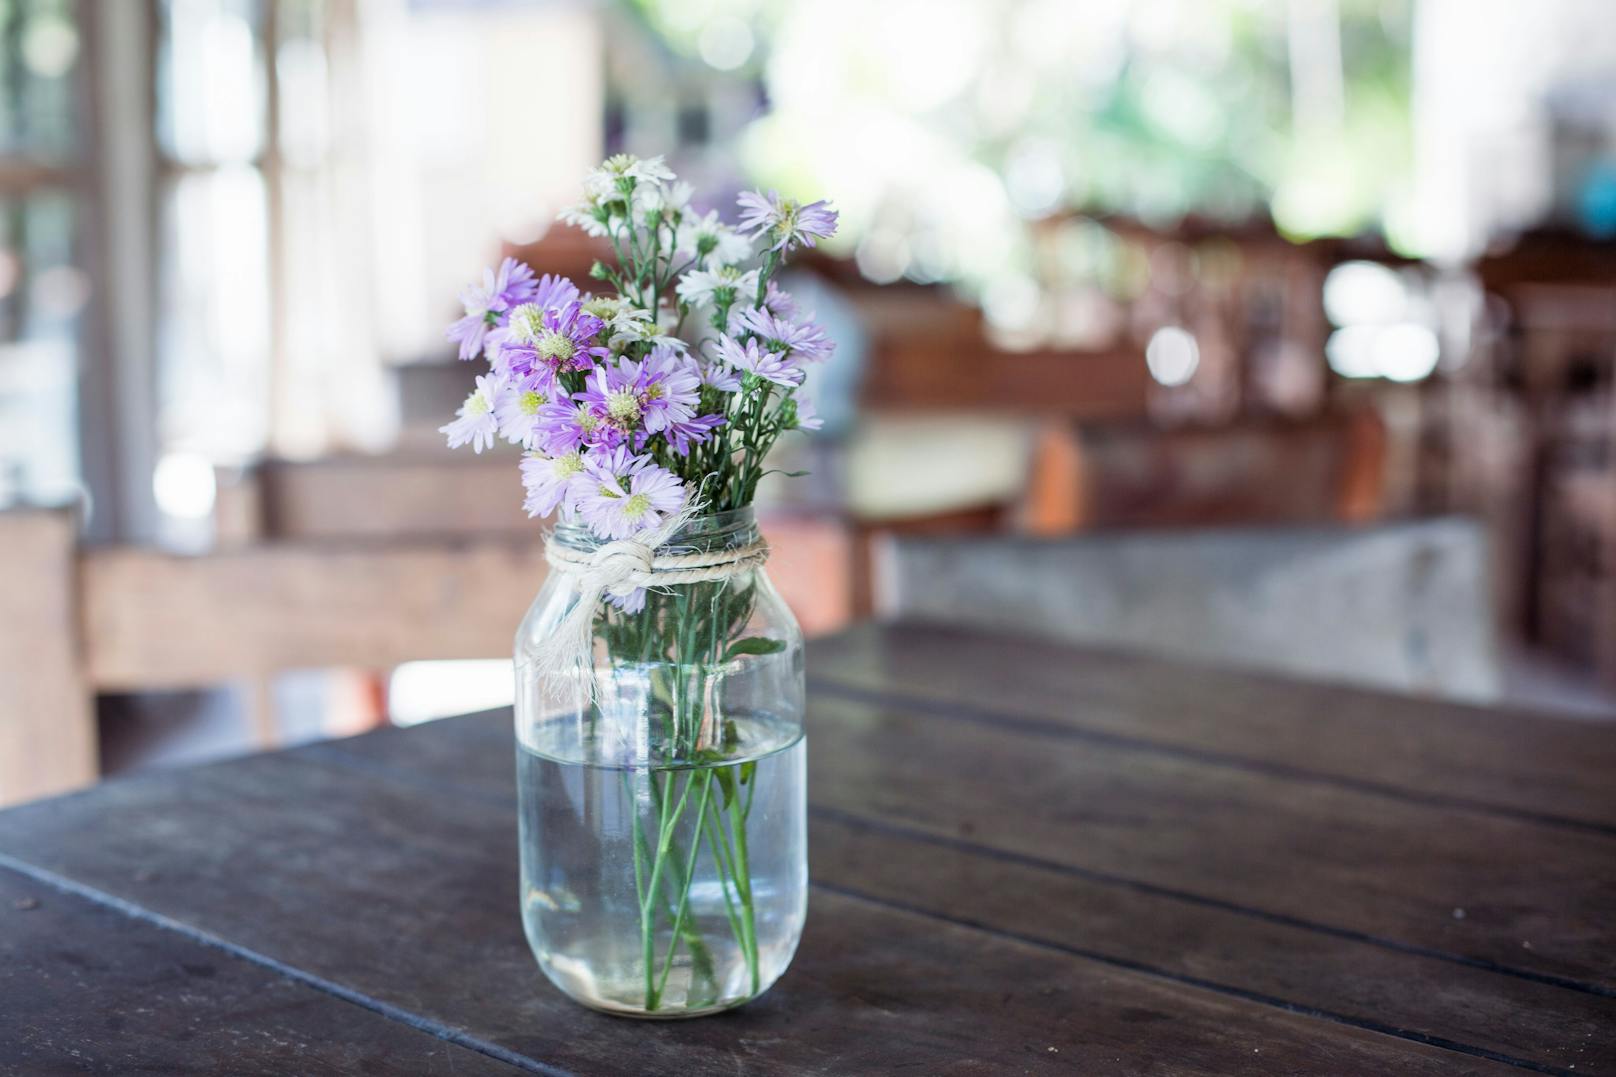 Leere Gläser können ganz einfach in eine Blumenvase umfunktioniert werden.